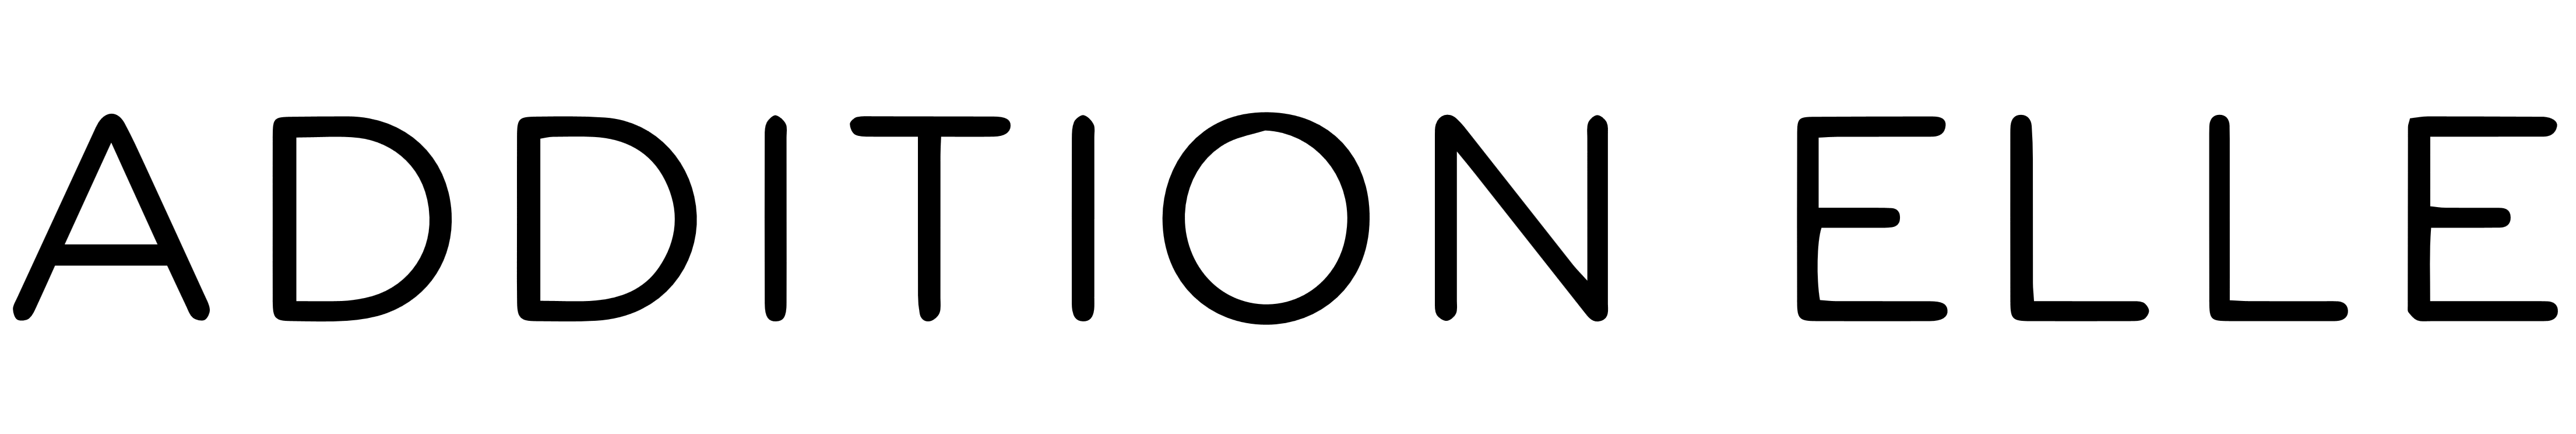 Addition Elle logo, logotype